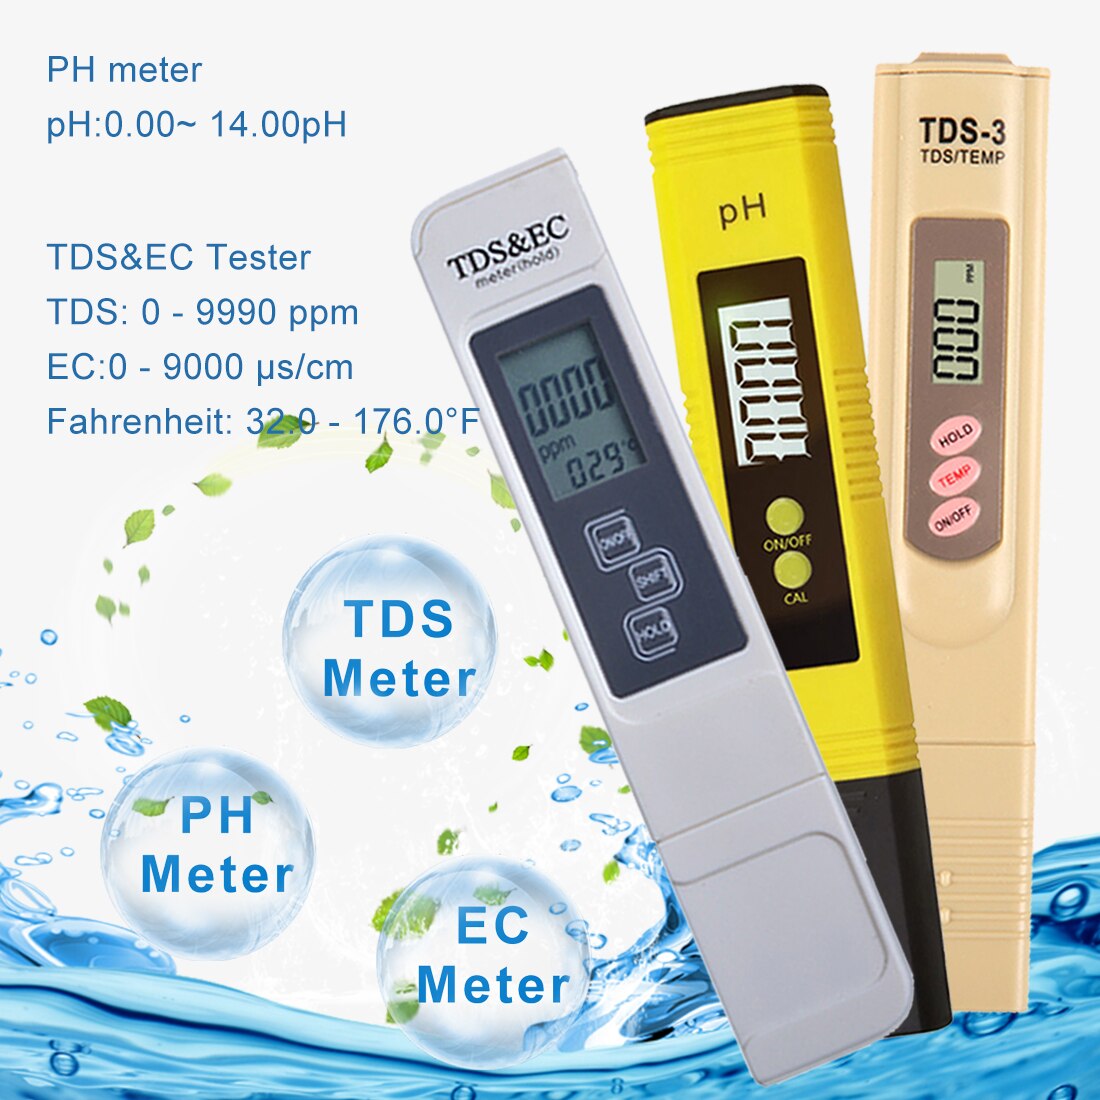 Lcd Display 2Pcs Ph Tester + Tds & Ec Meter/TDS-3 Meter/Ph Papier Tester Meter Voor meten Waterkwaliteit Zuiverheid Zwembad